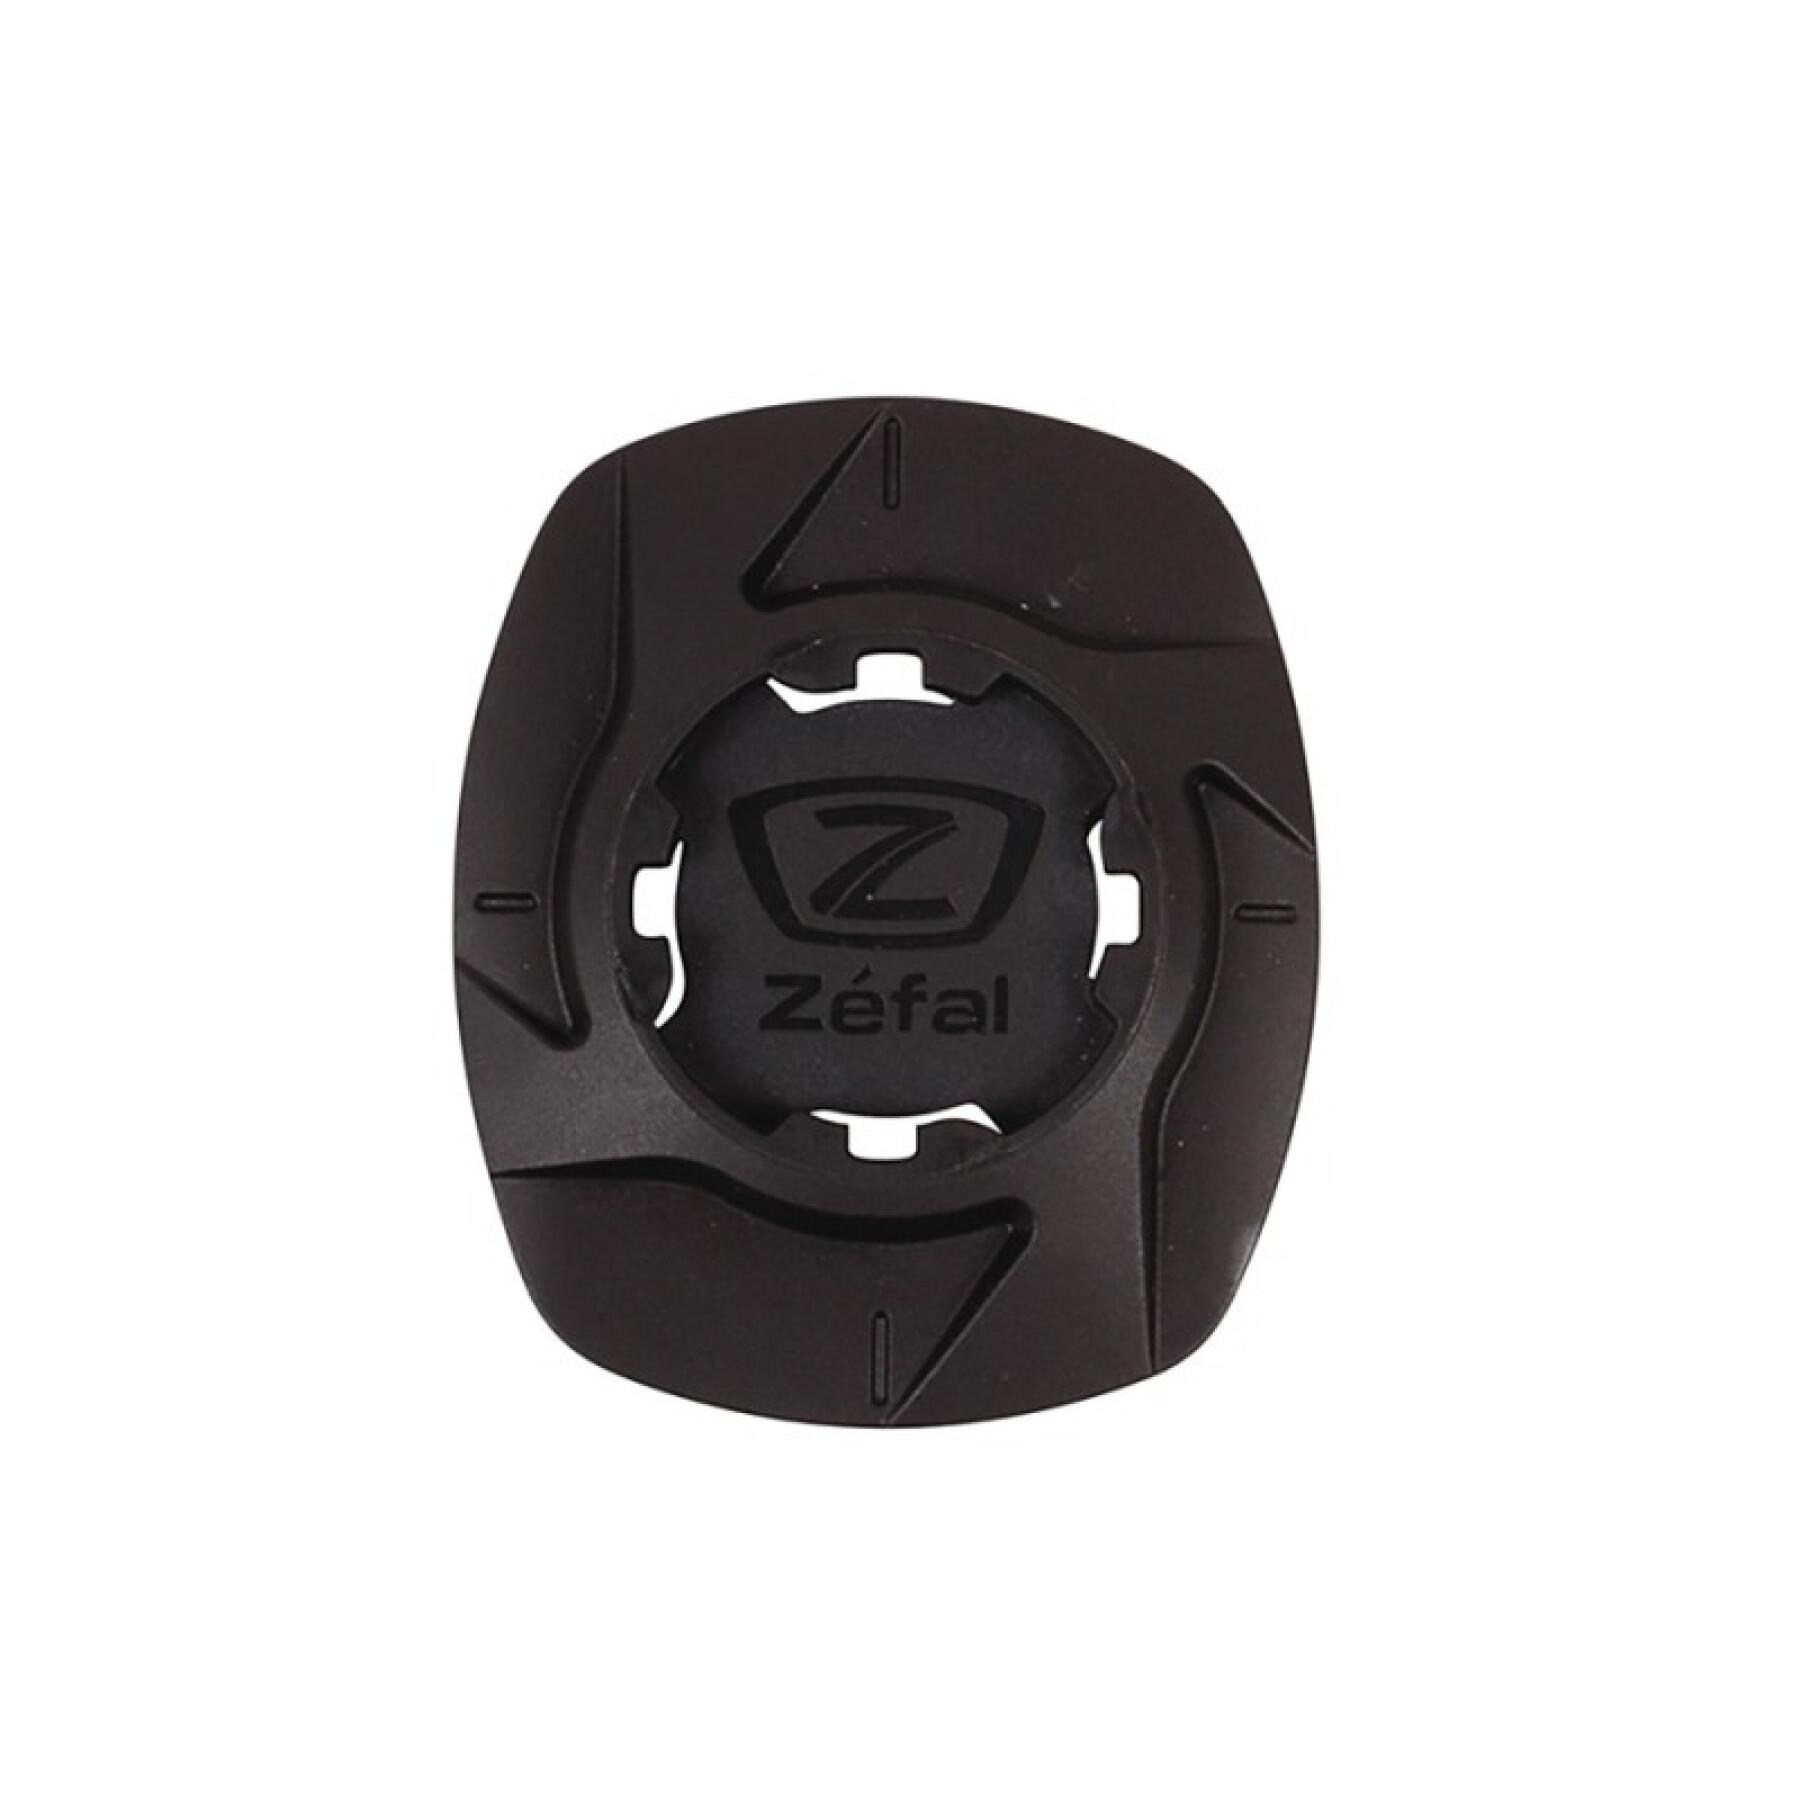 Adaptador universal de smartphone para soportes Zefal bike/handlebar/armand/car mount